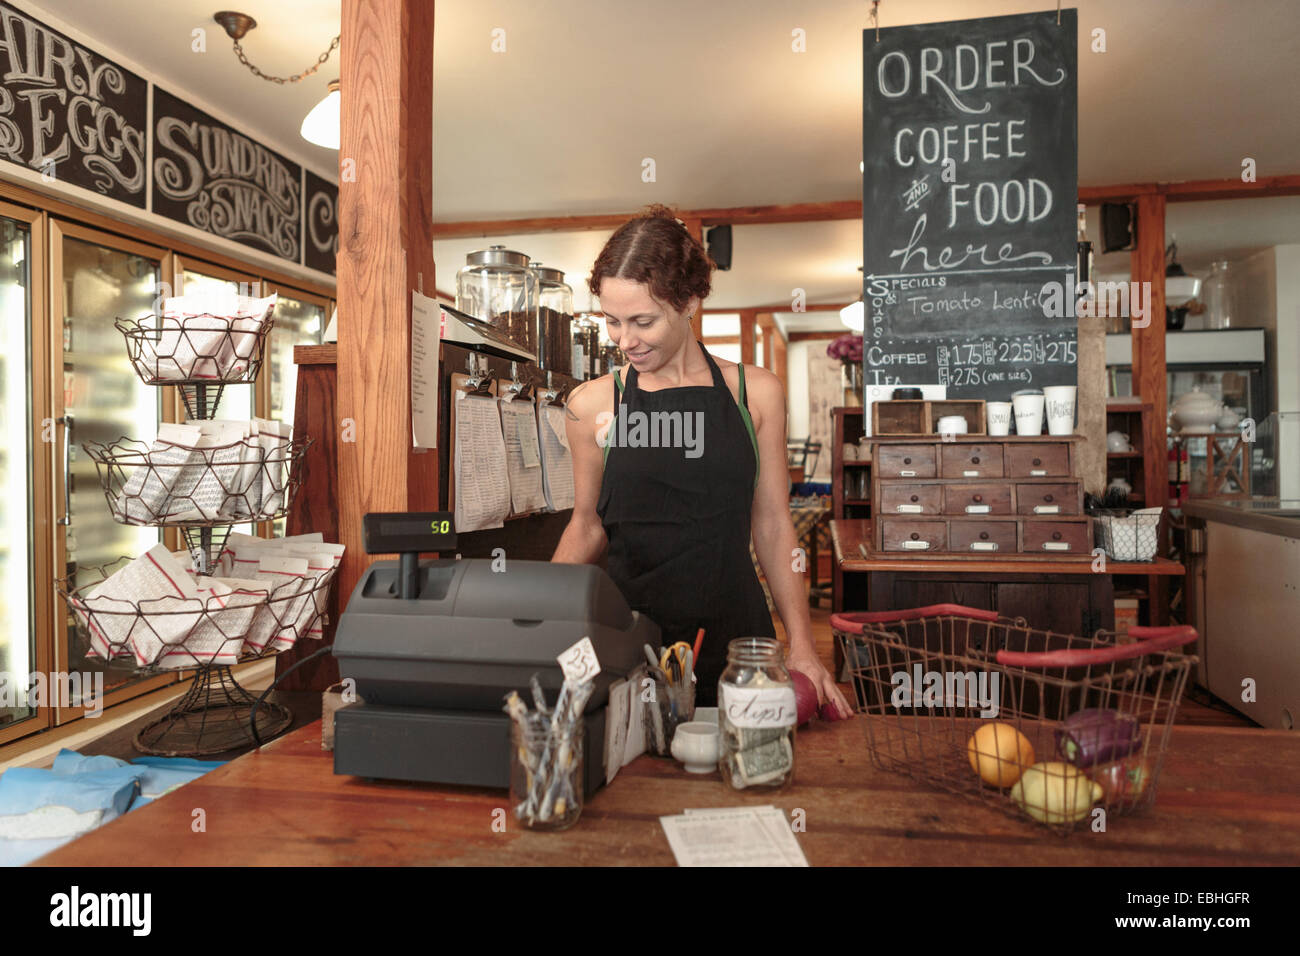 Asistente de ventas femenino mediante la casilla de salida hasta en Country Store cafe Foto de stock